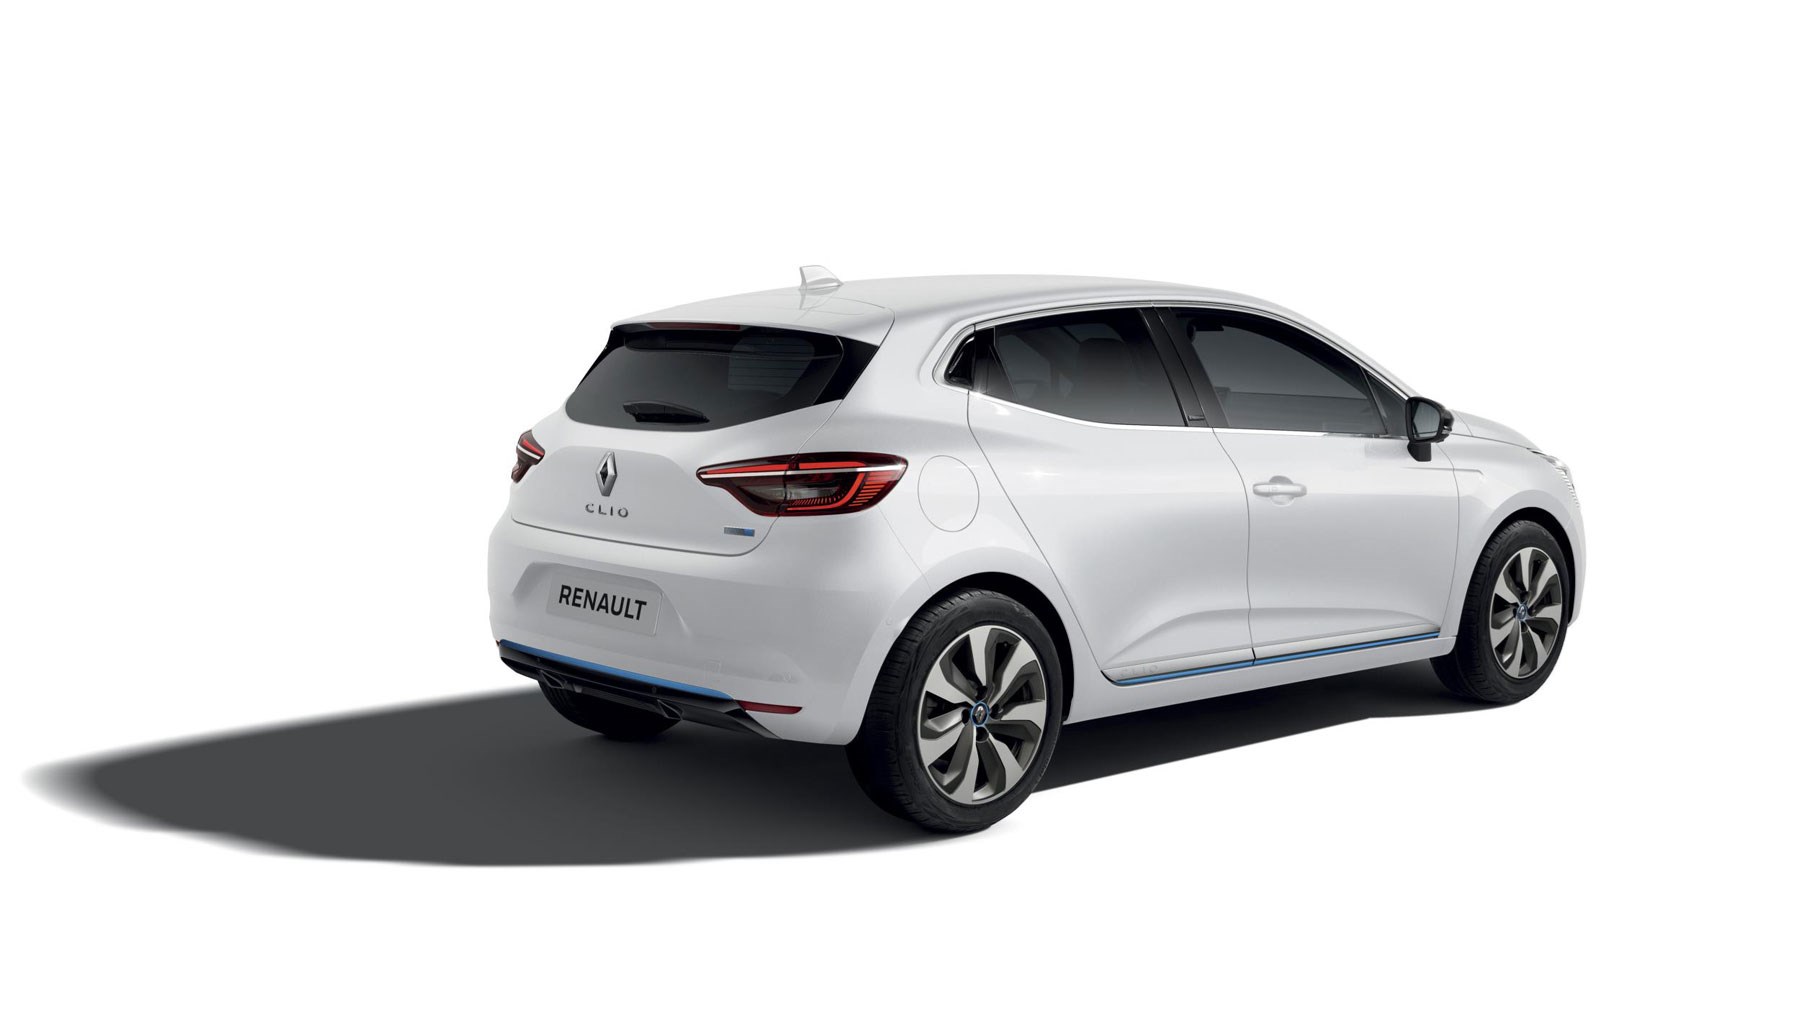 Renault CLIO 5 – Features, Interior and Design Details 